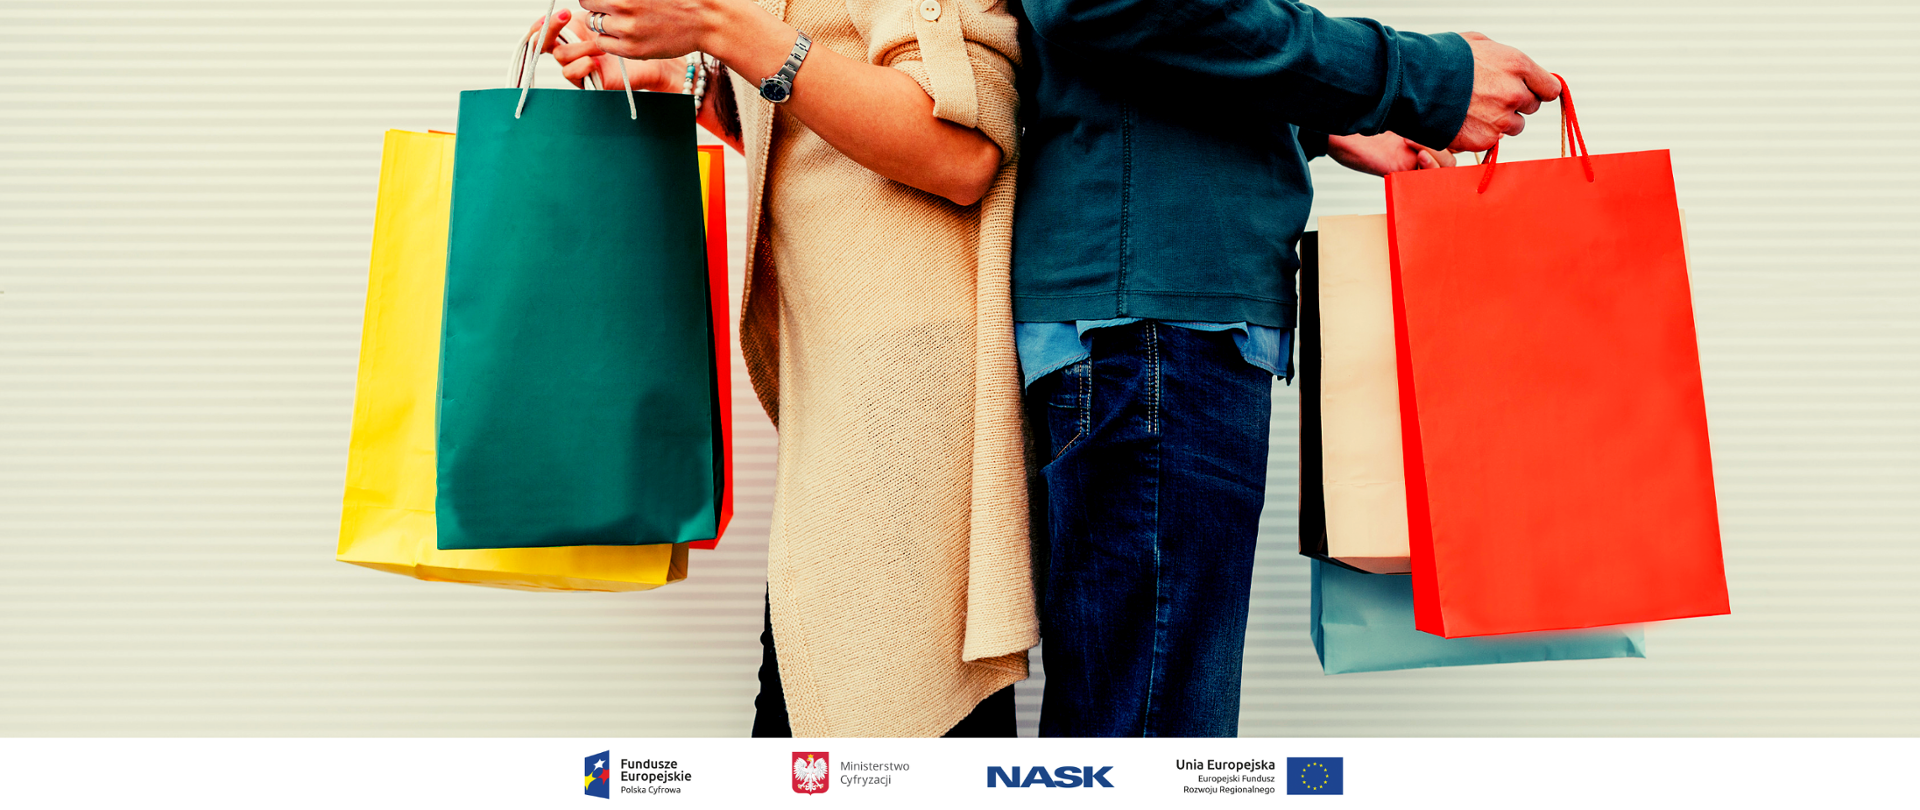 Mężczyzna i kobieta, odwróceni do siebie plecami, stoją trzymając kolorowe torby z zakupami.